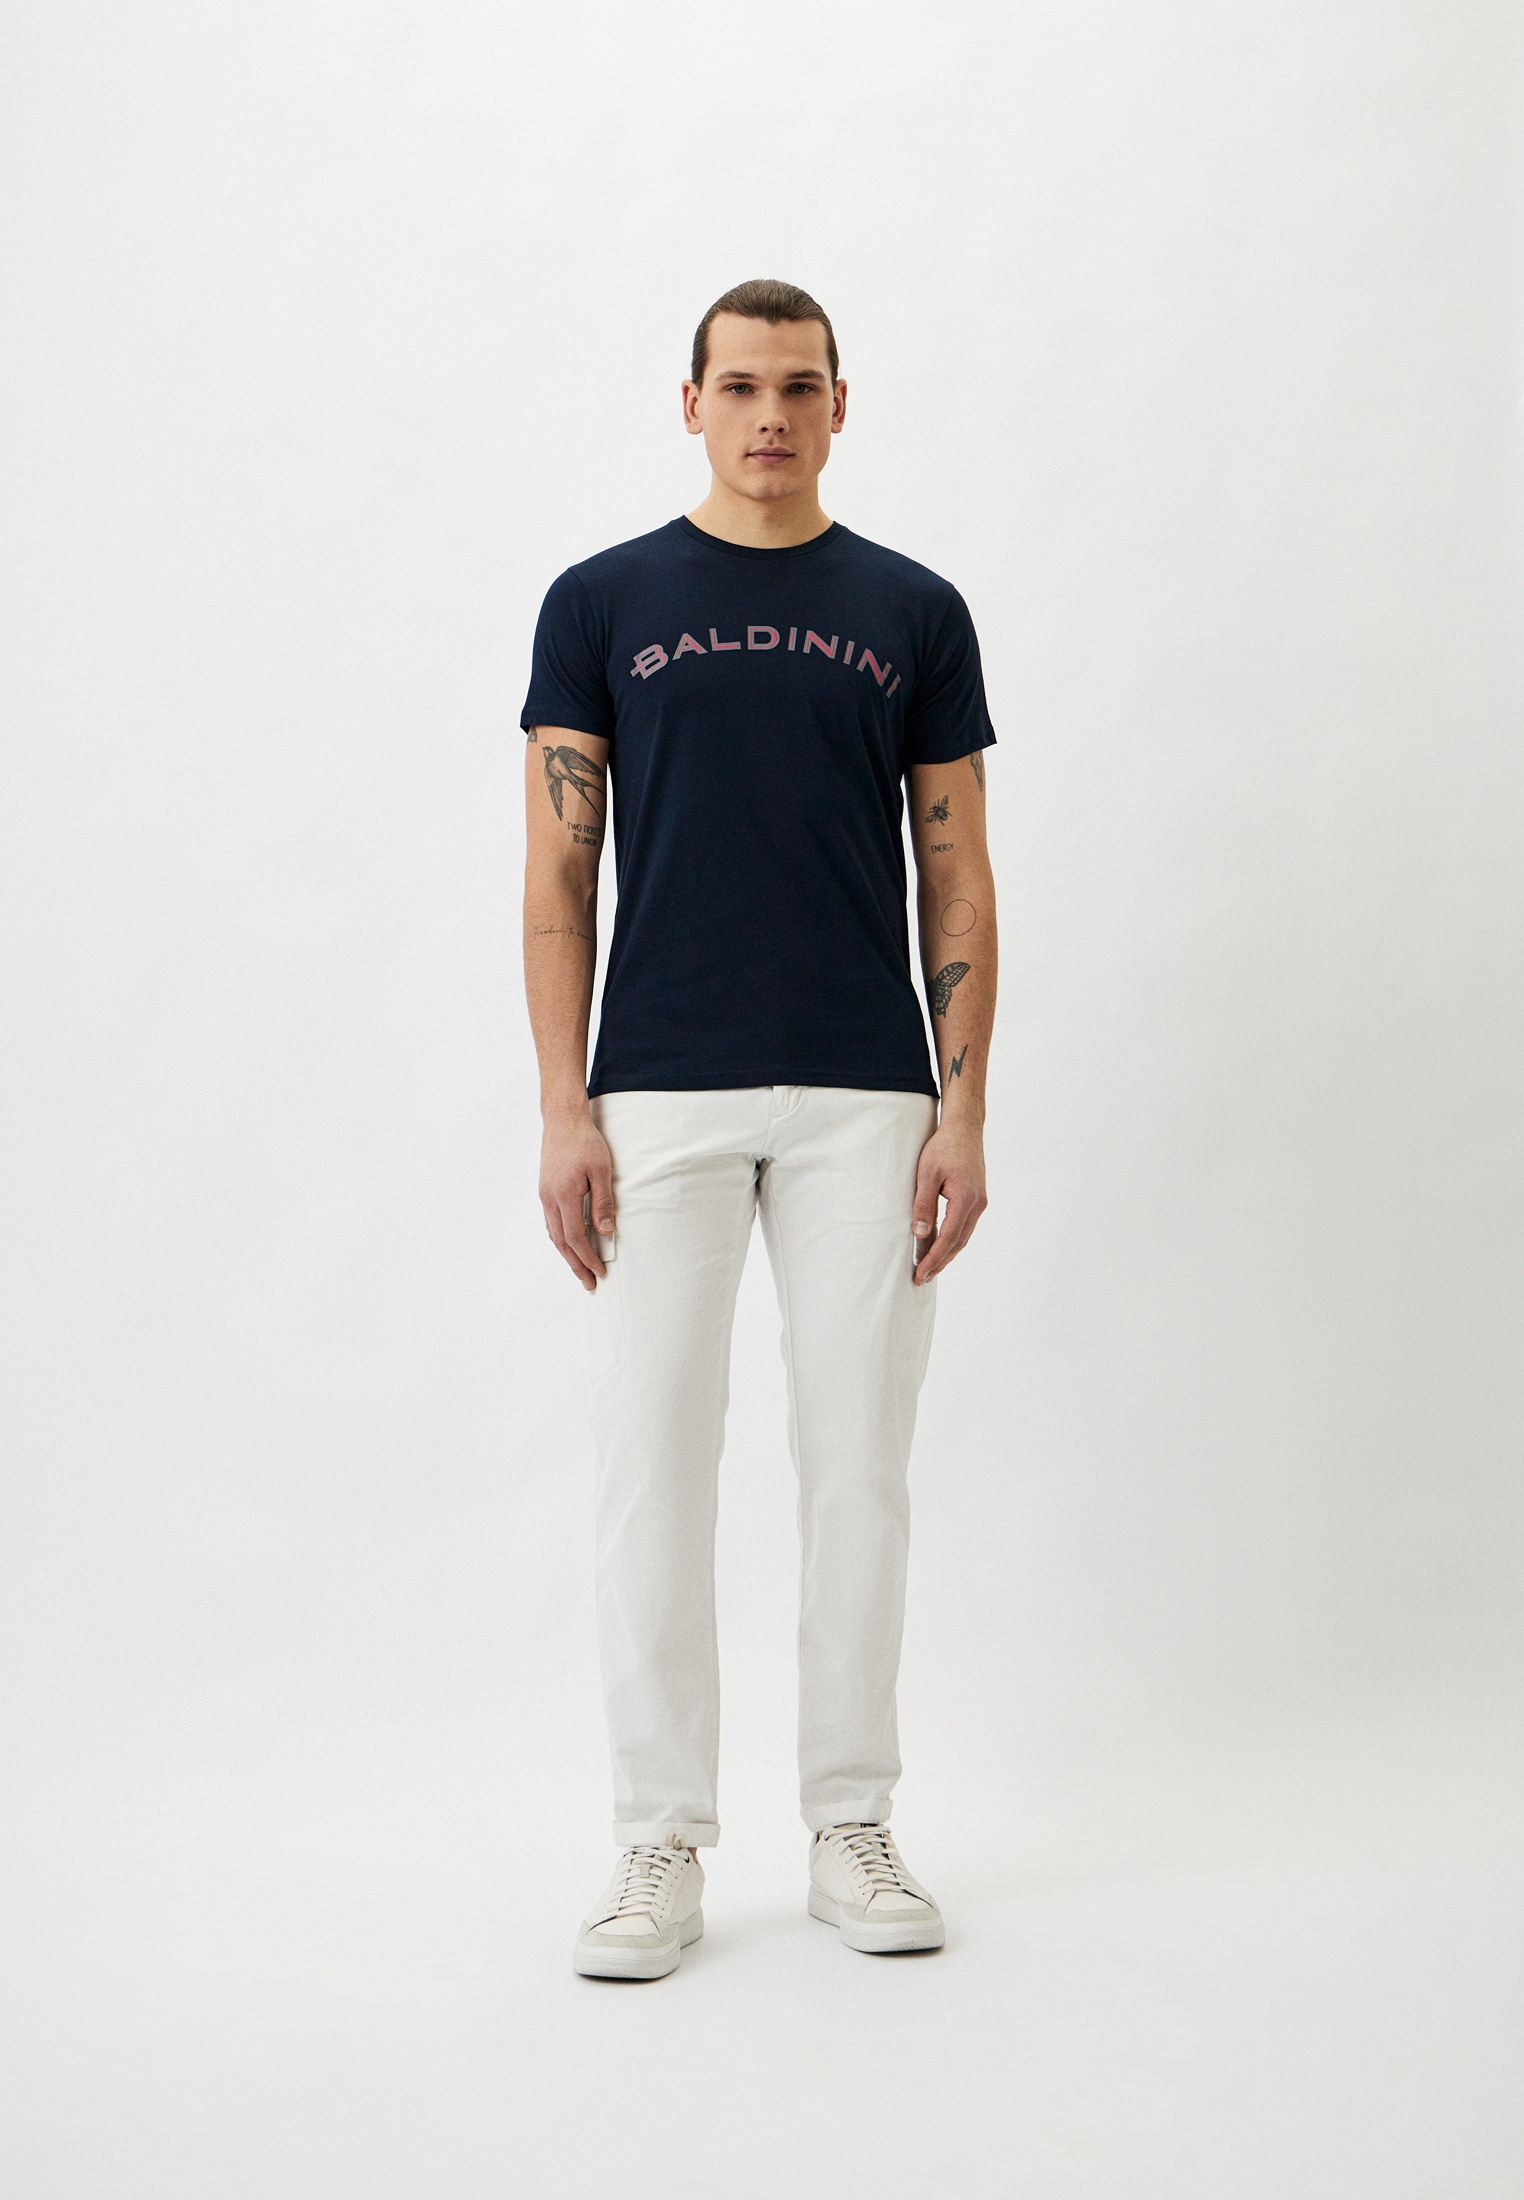 Мужская футболка Baldinini (Балдинини) B-OLM-M001: изображение 2